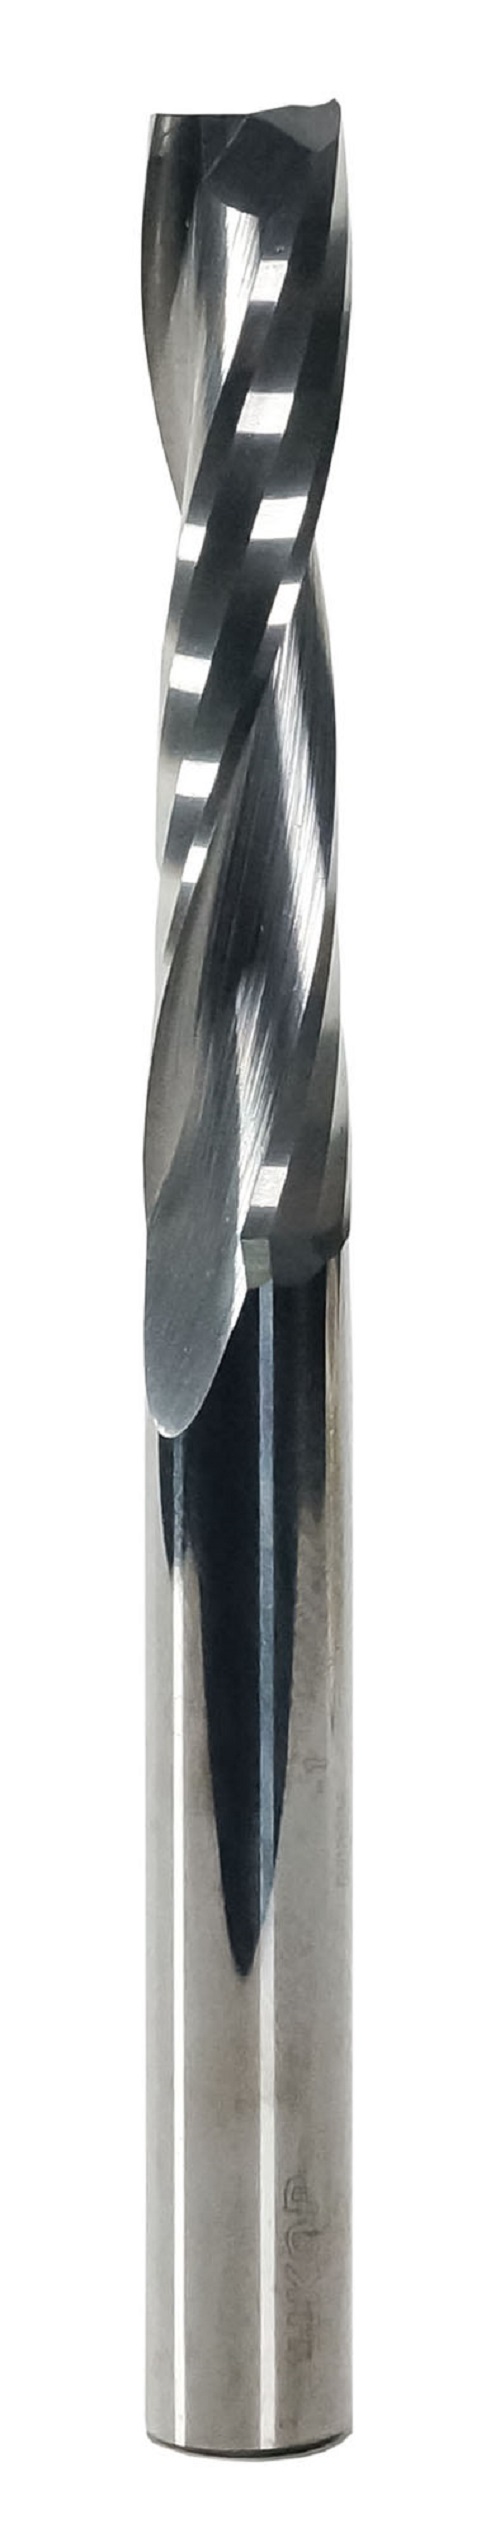 Фреза спиральная твердосплавная Энкор Z2 верхний рез ф8х42 мм хв.8 46652 фреза wpw pfm8192 копир сменные ножи верхний подшипник d19 b50 z2 хвостовик 12s pfm8192